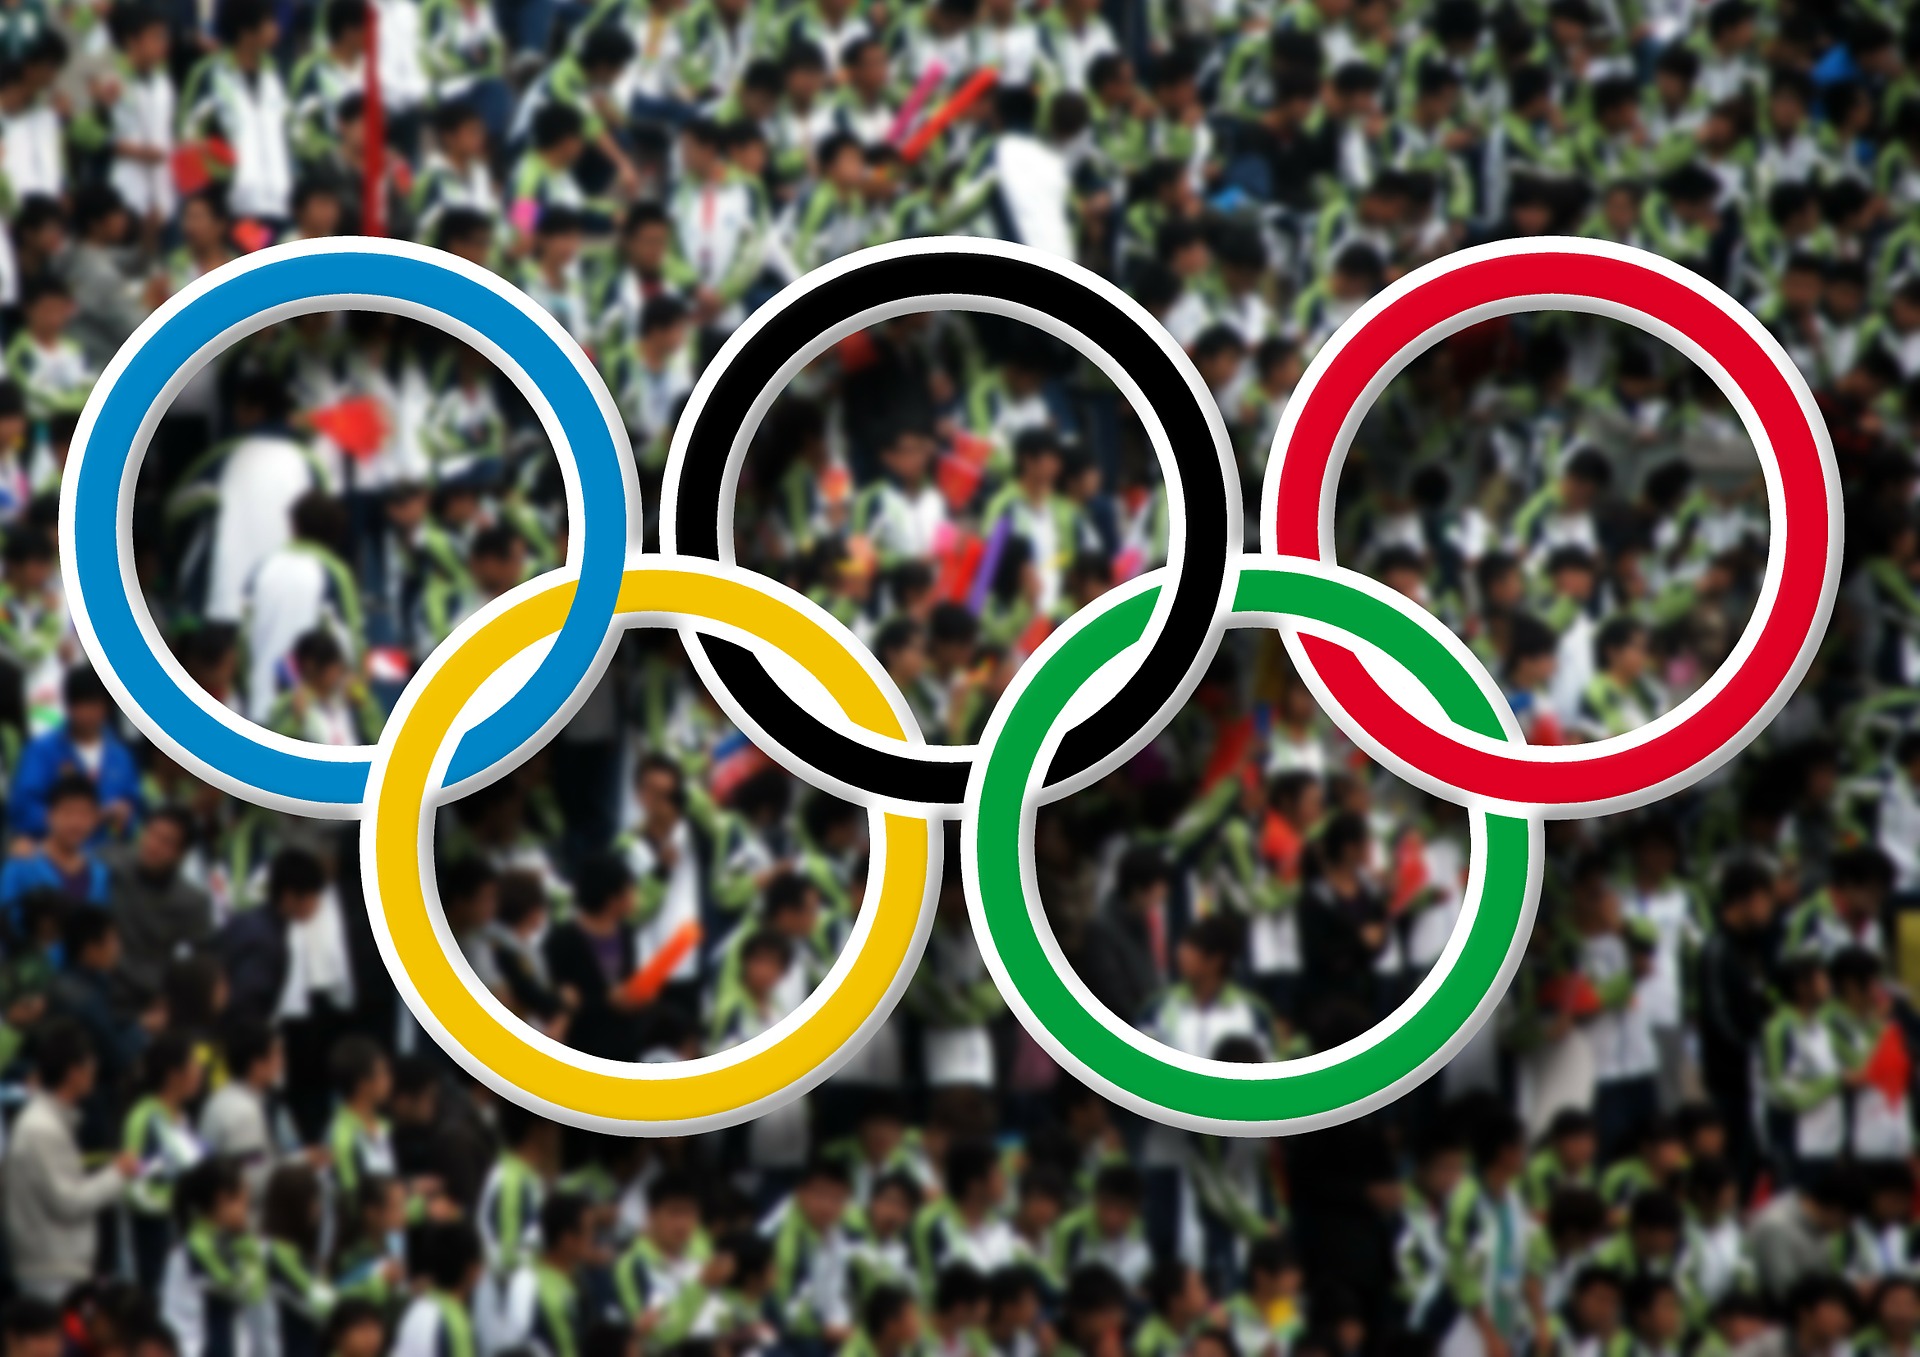 МОК включит в Олимпиаду 5 видов спорта, соответствующих американской культуре